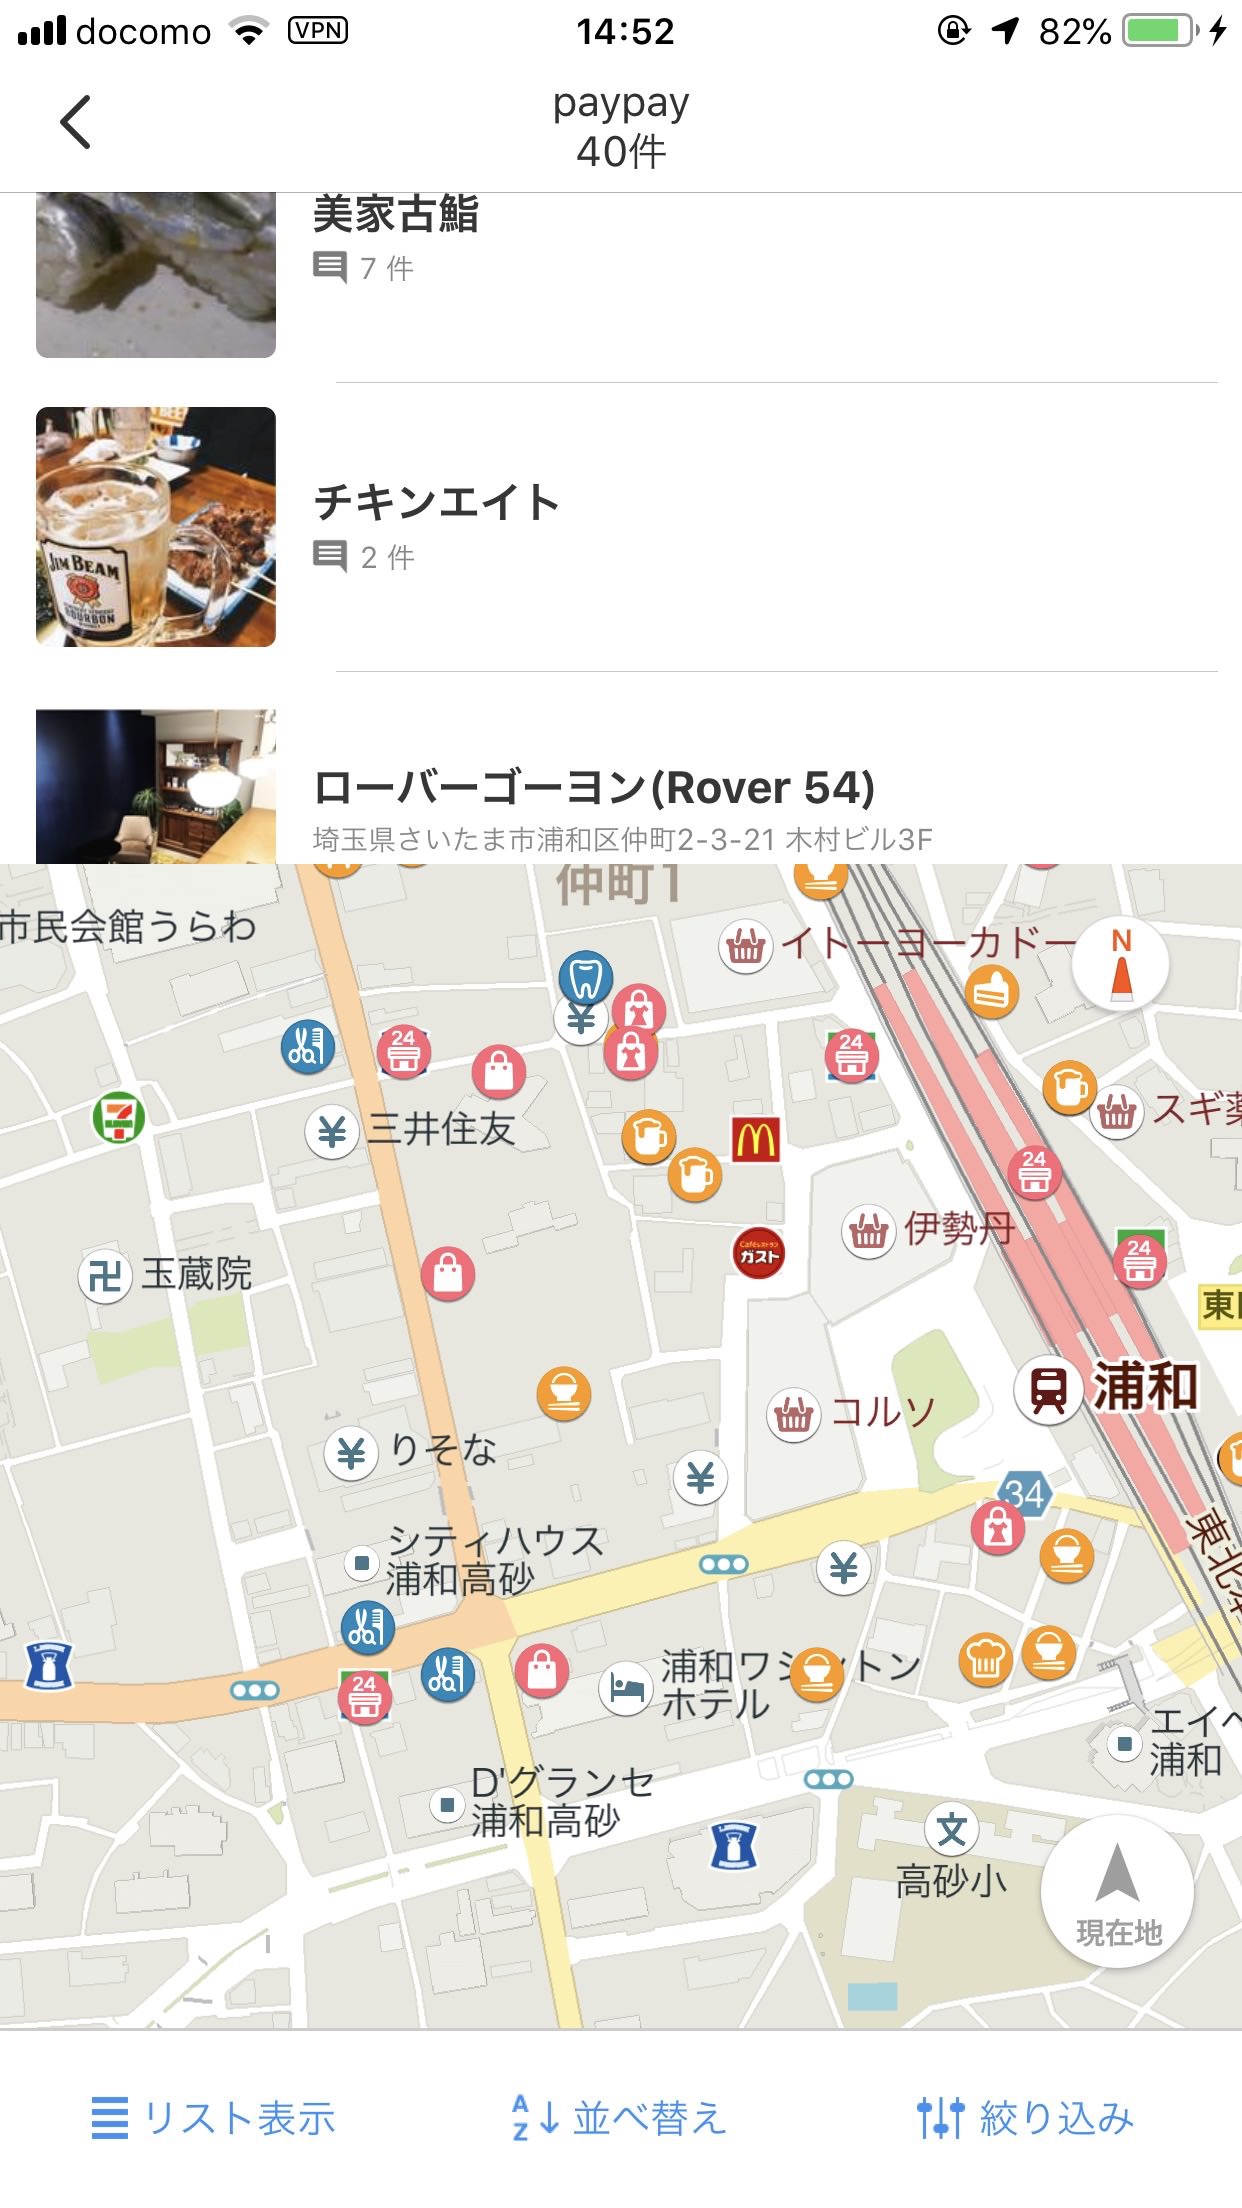 【PayPay】Yahoo! 地図やマップアプリで対応店舗の検索が可能に